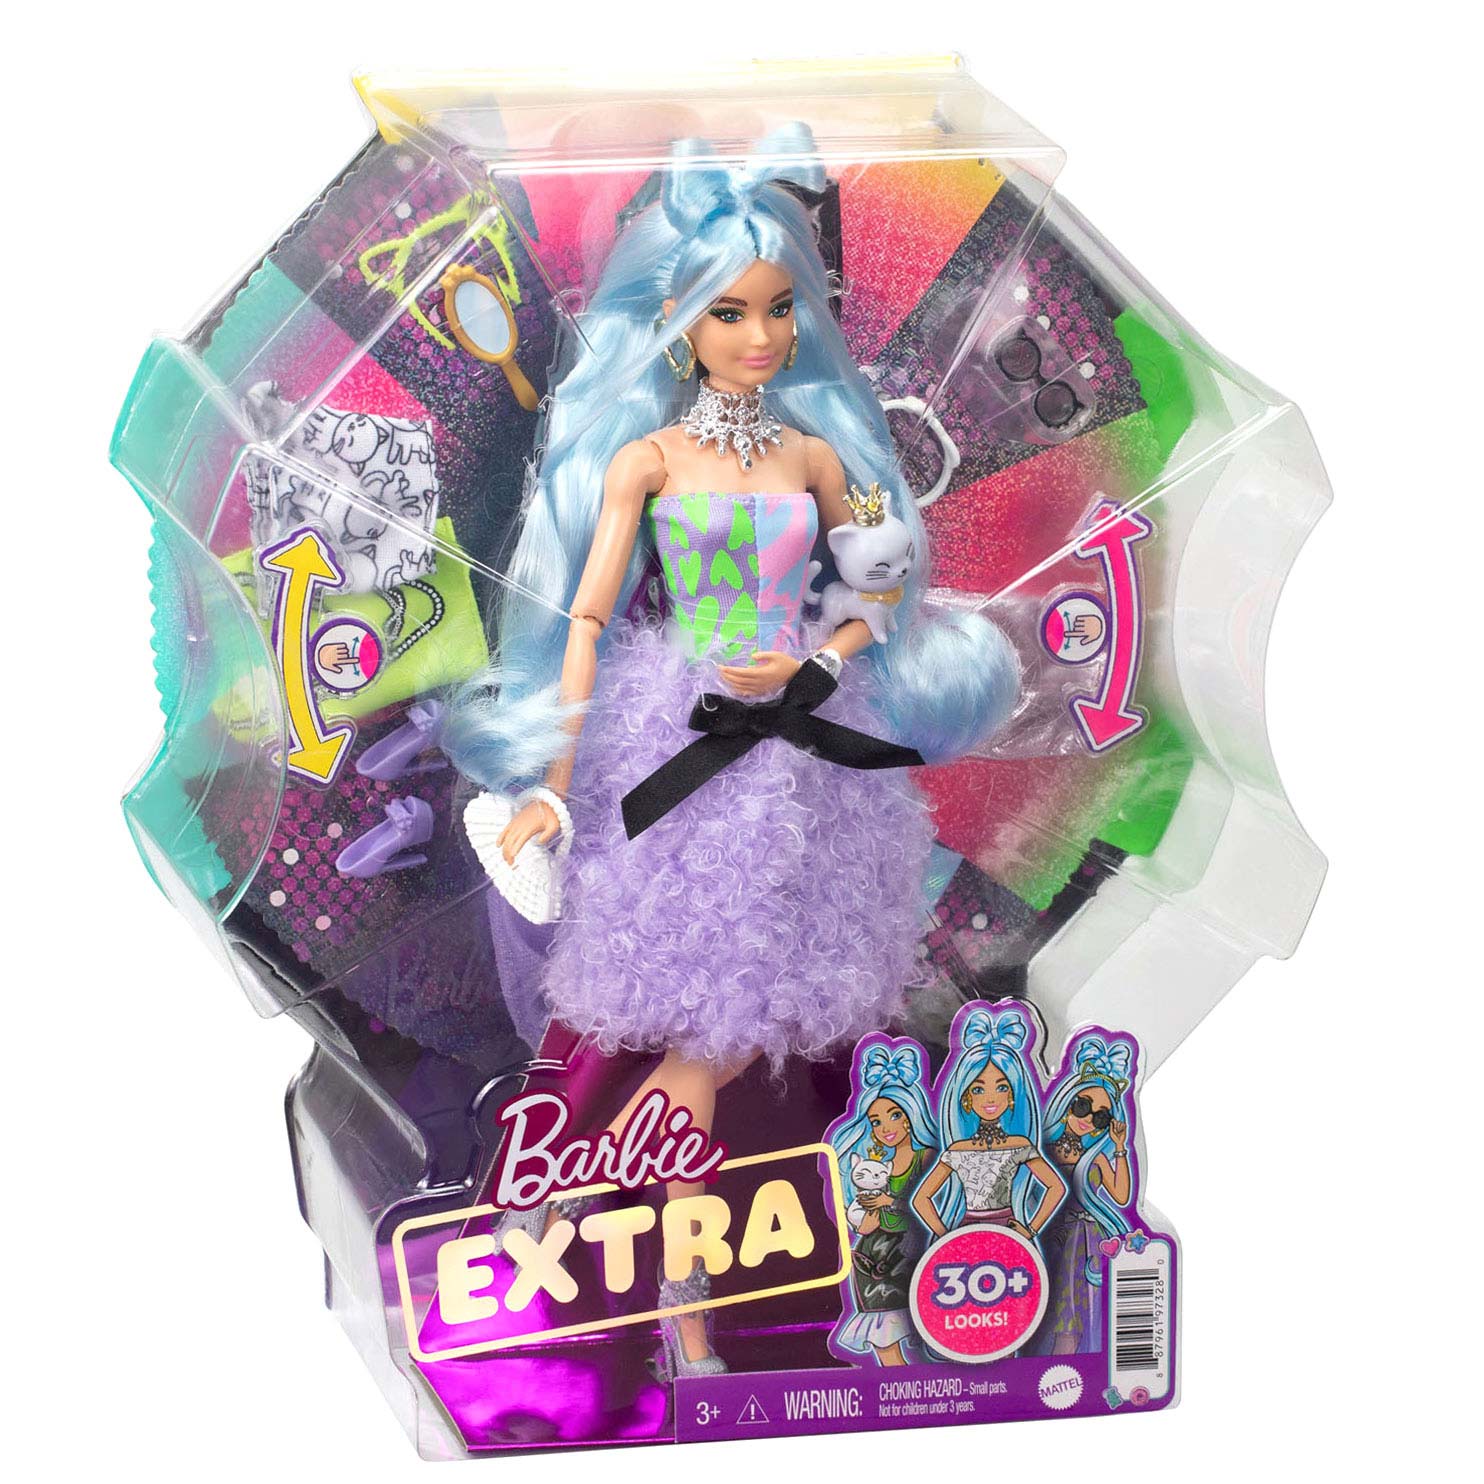 Barbie Extra Deluxe Pop online kopen? | Speelgoed